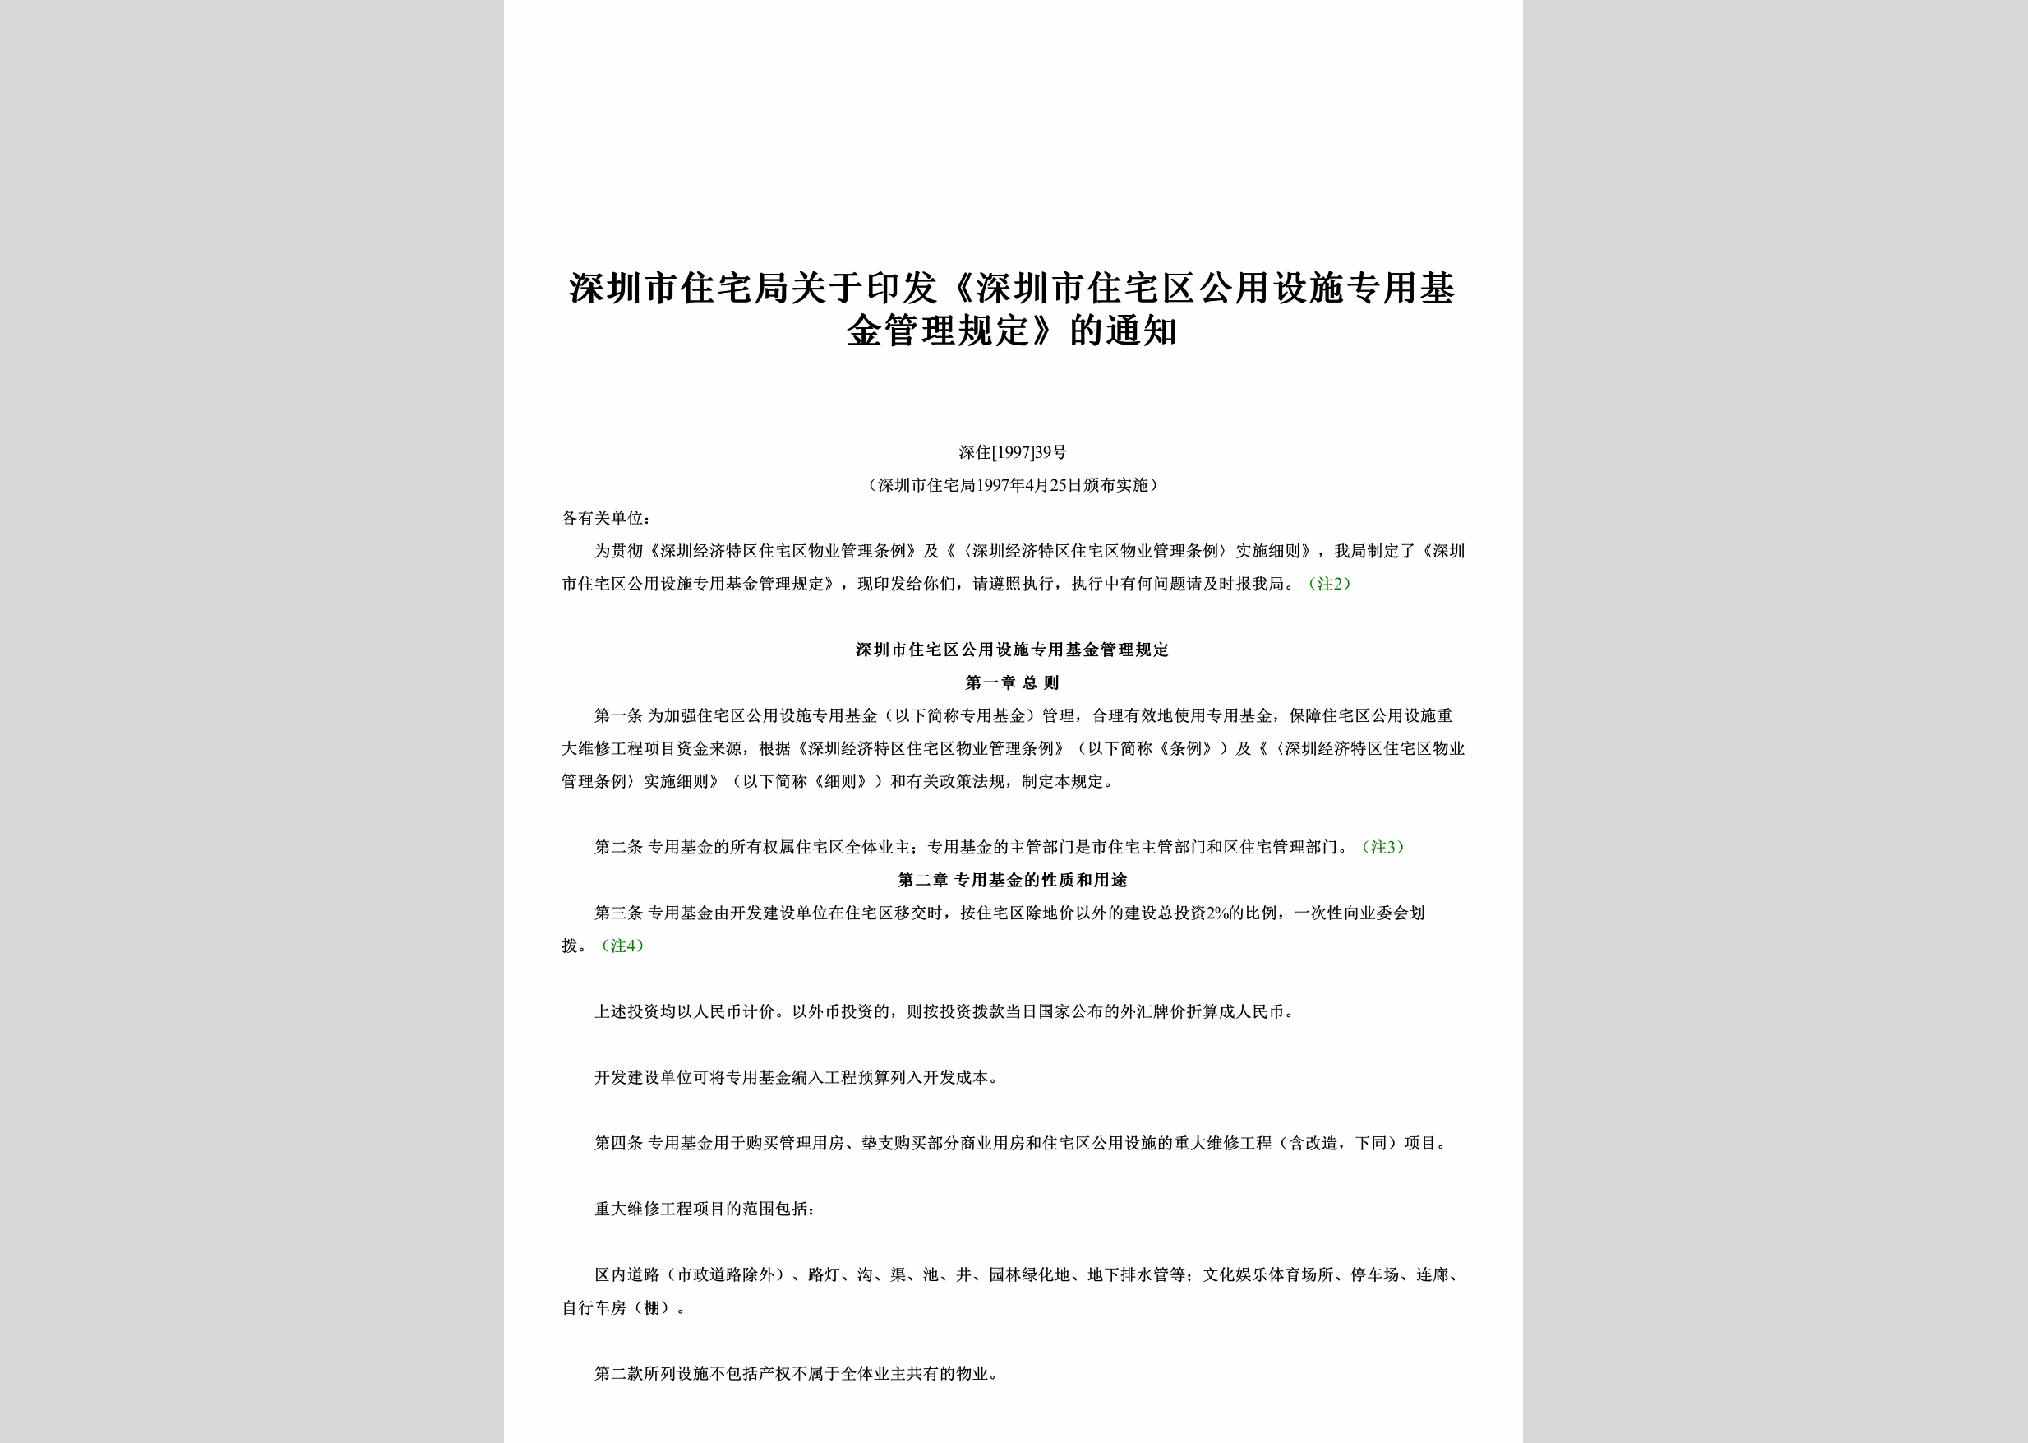 深住[1997]39号：关于印发《深圳市住宅区公用设施专用基金管理规定》的通知